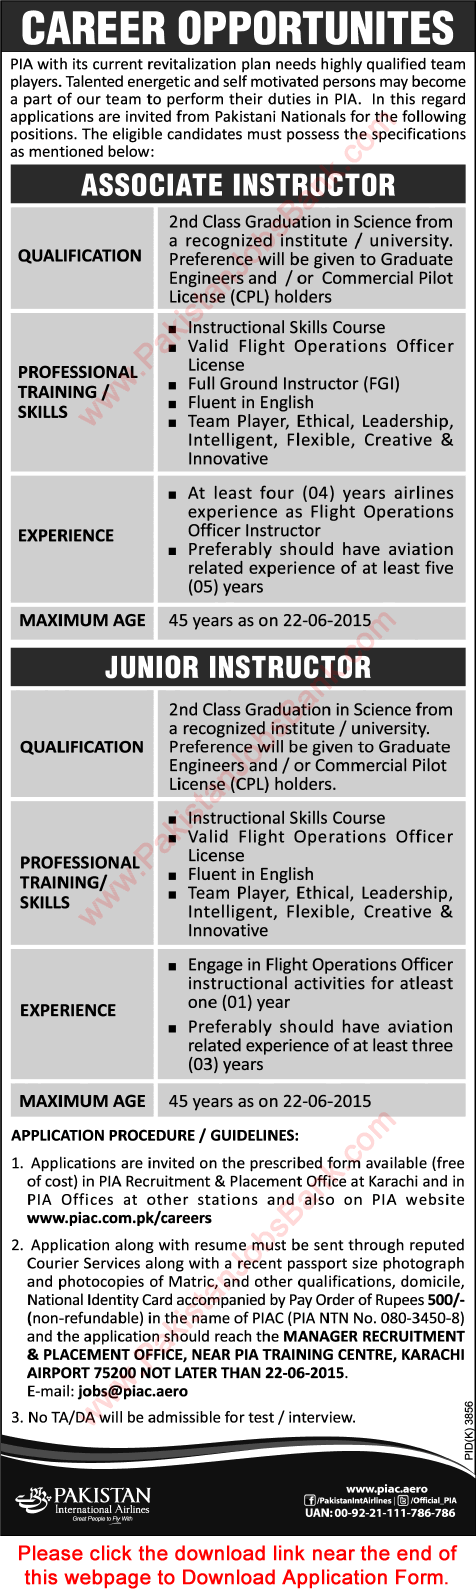 PIA Jobs June 2015 Associate / Junior Instructors Application Form Download